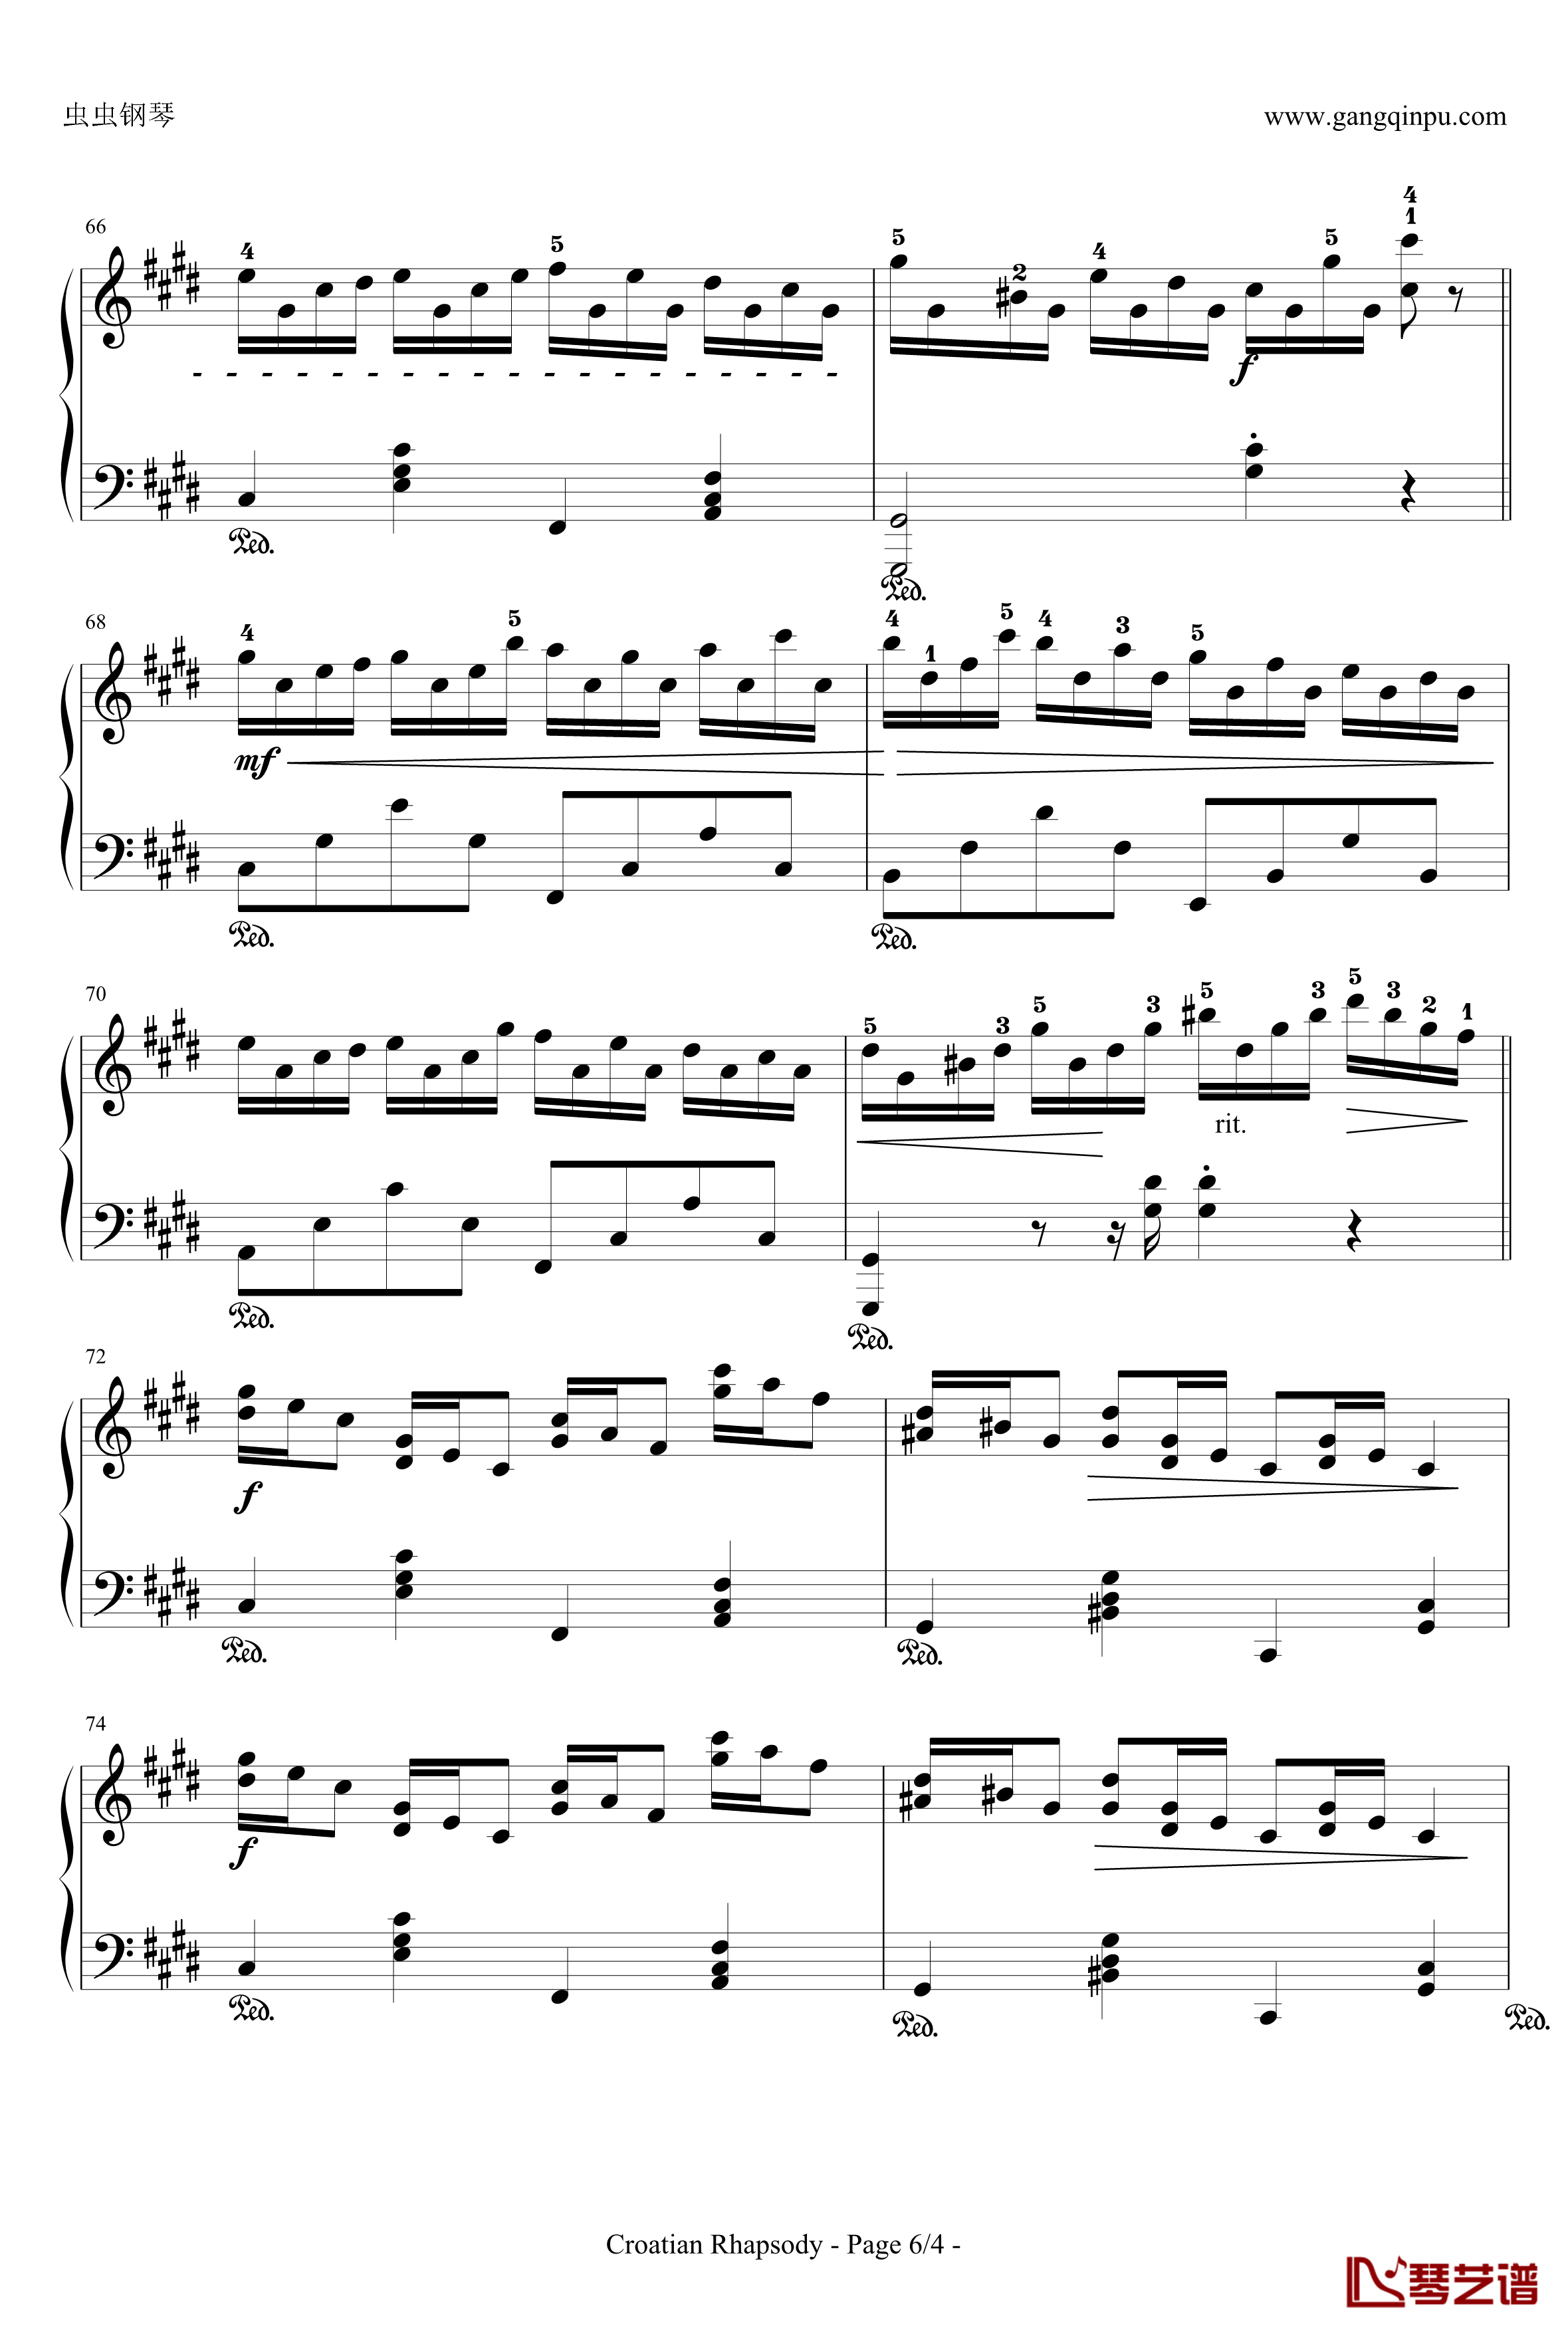 克罗地亚狂想曲钢琴谱-带指法简易版学生最爱-马克西姆-Maksim·Mrvica6